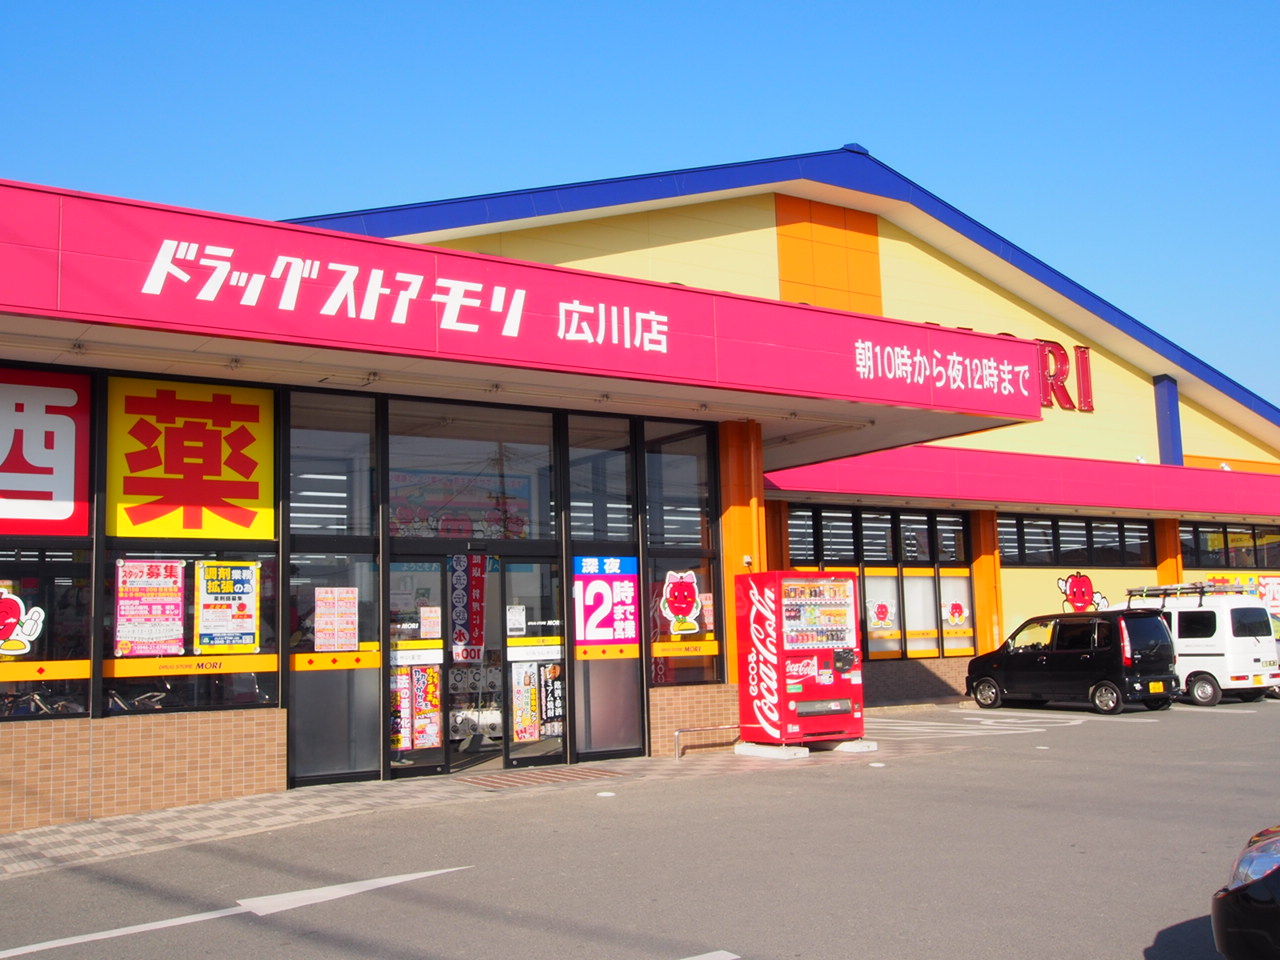 Dorakkusutoa. Drugstore Mori Hirokawa shop 1588m until (drugstore)